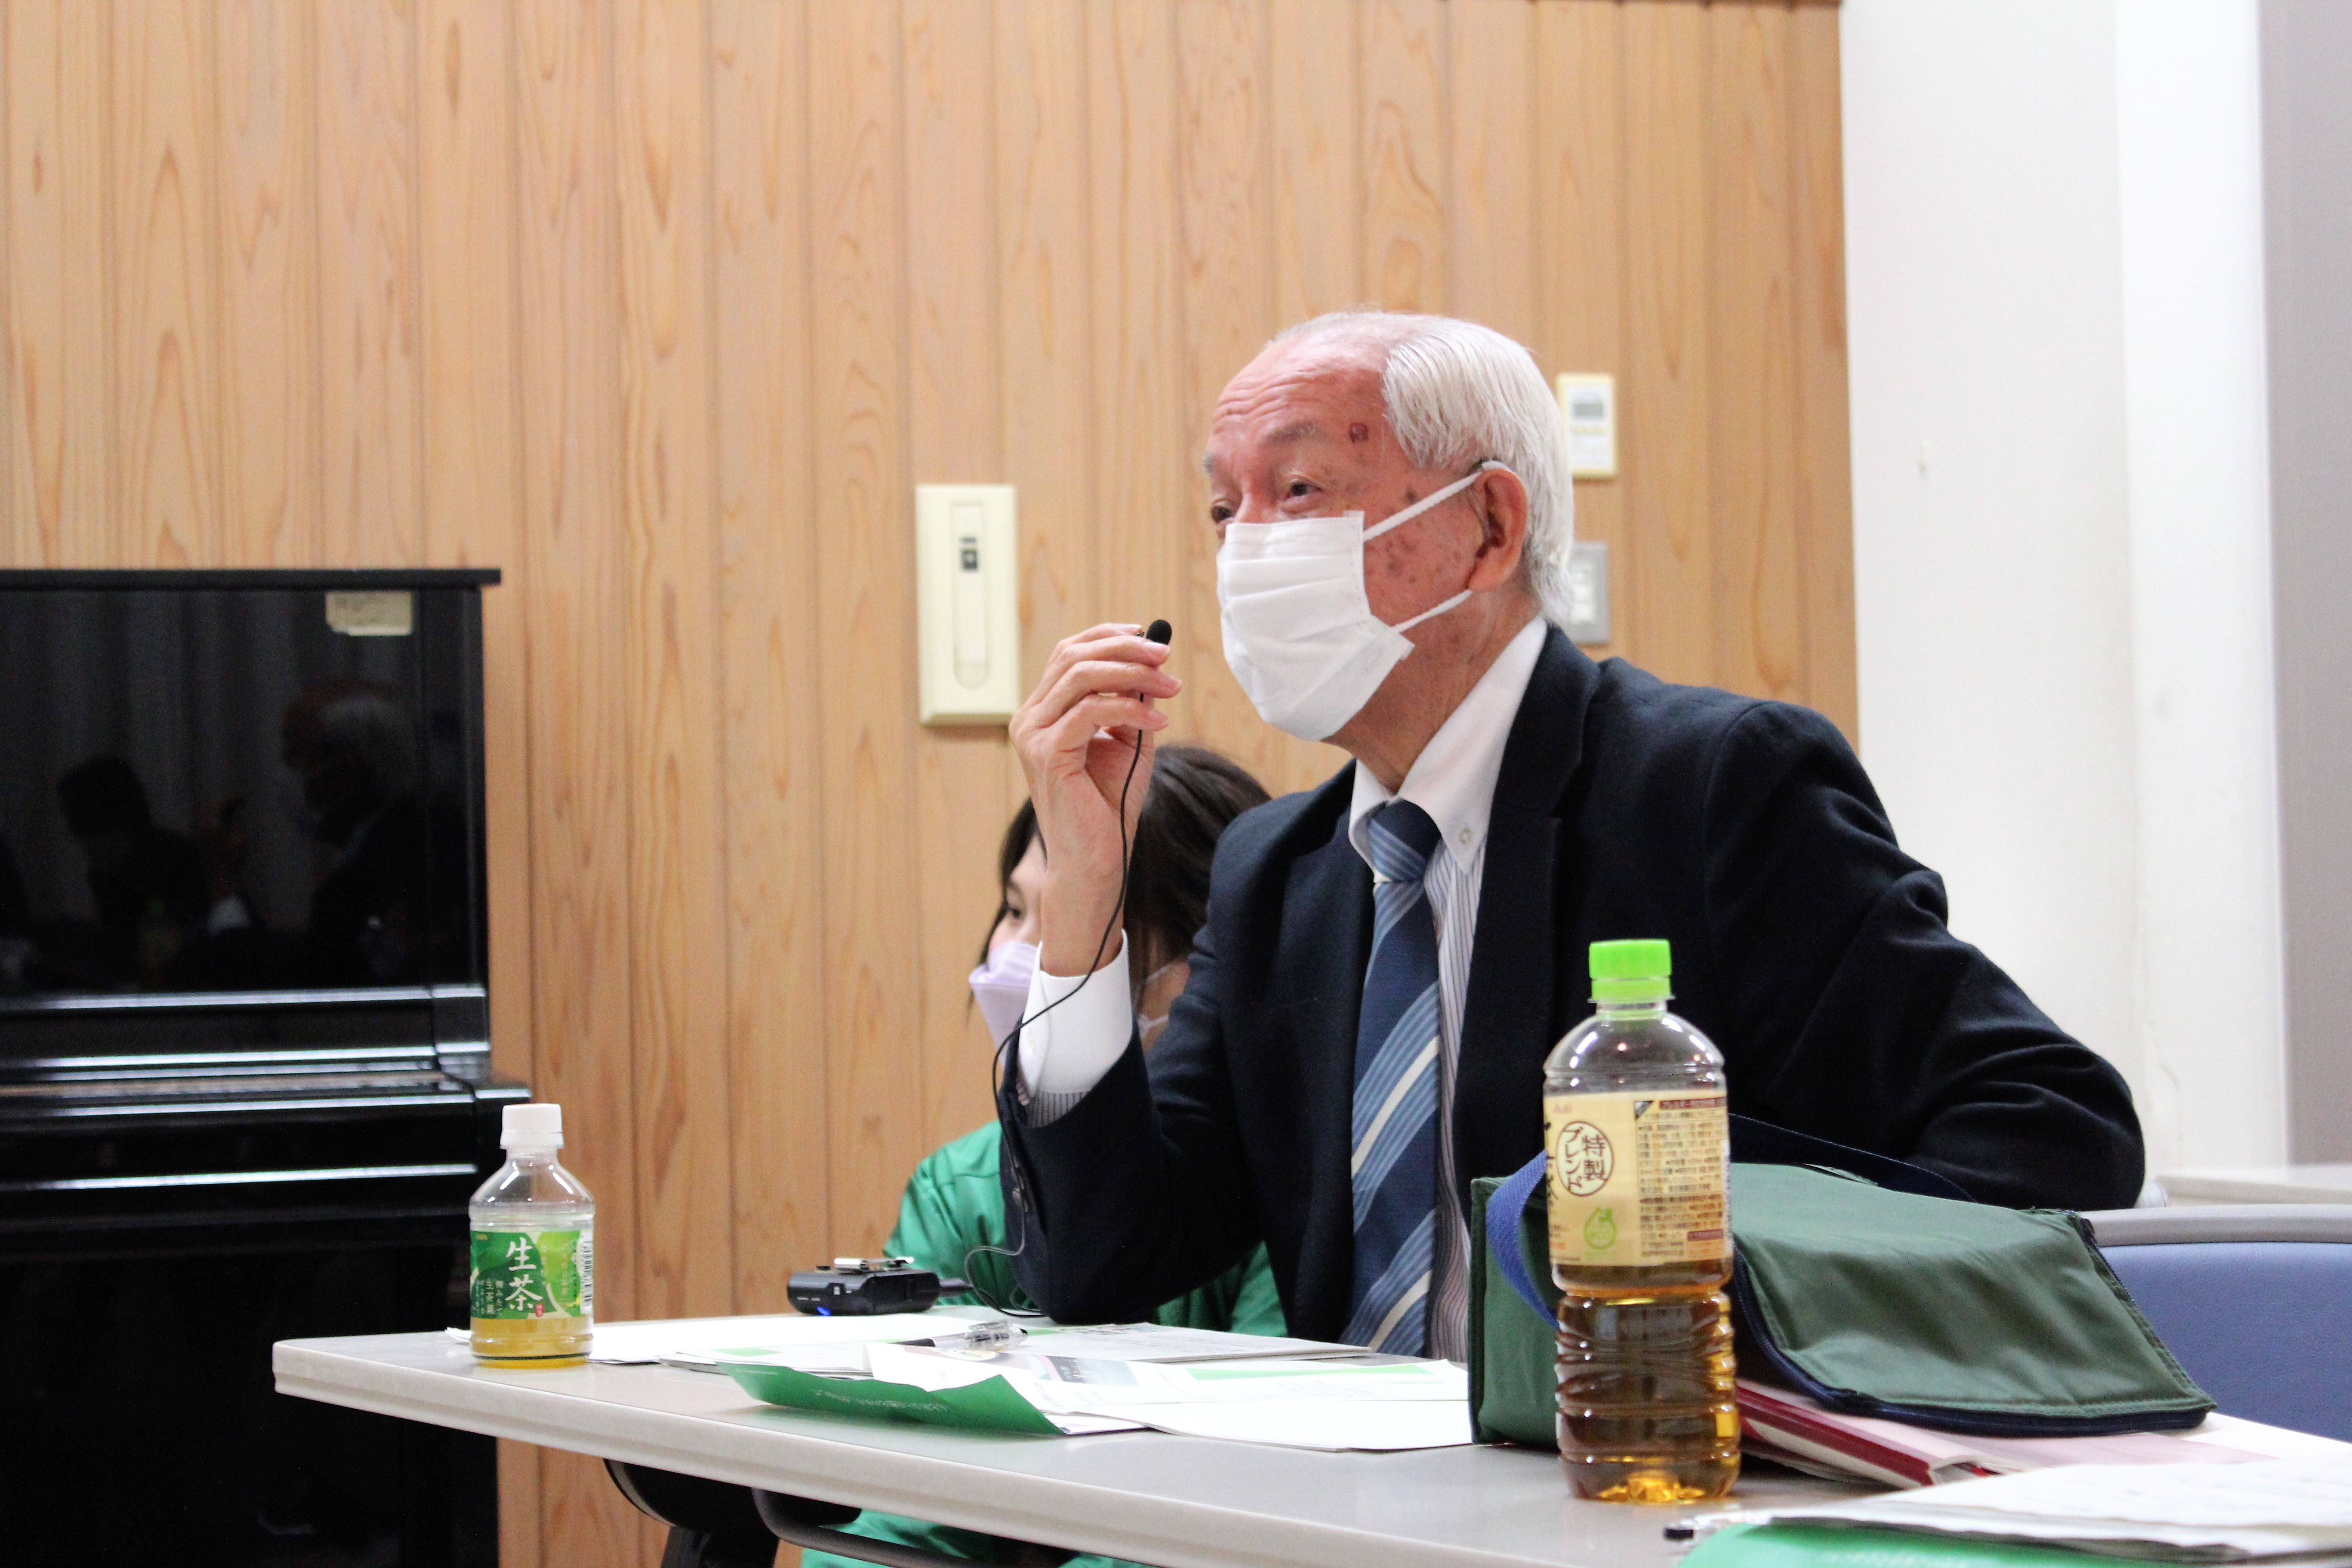 公立鳥取環境大学を支援する会<br>坂本会長が発表者へ質問する様子